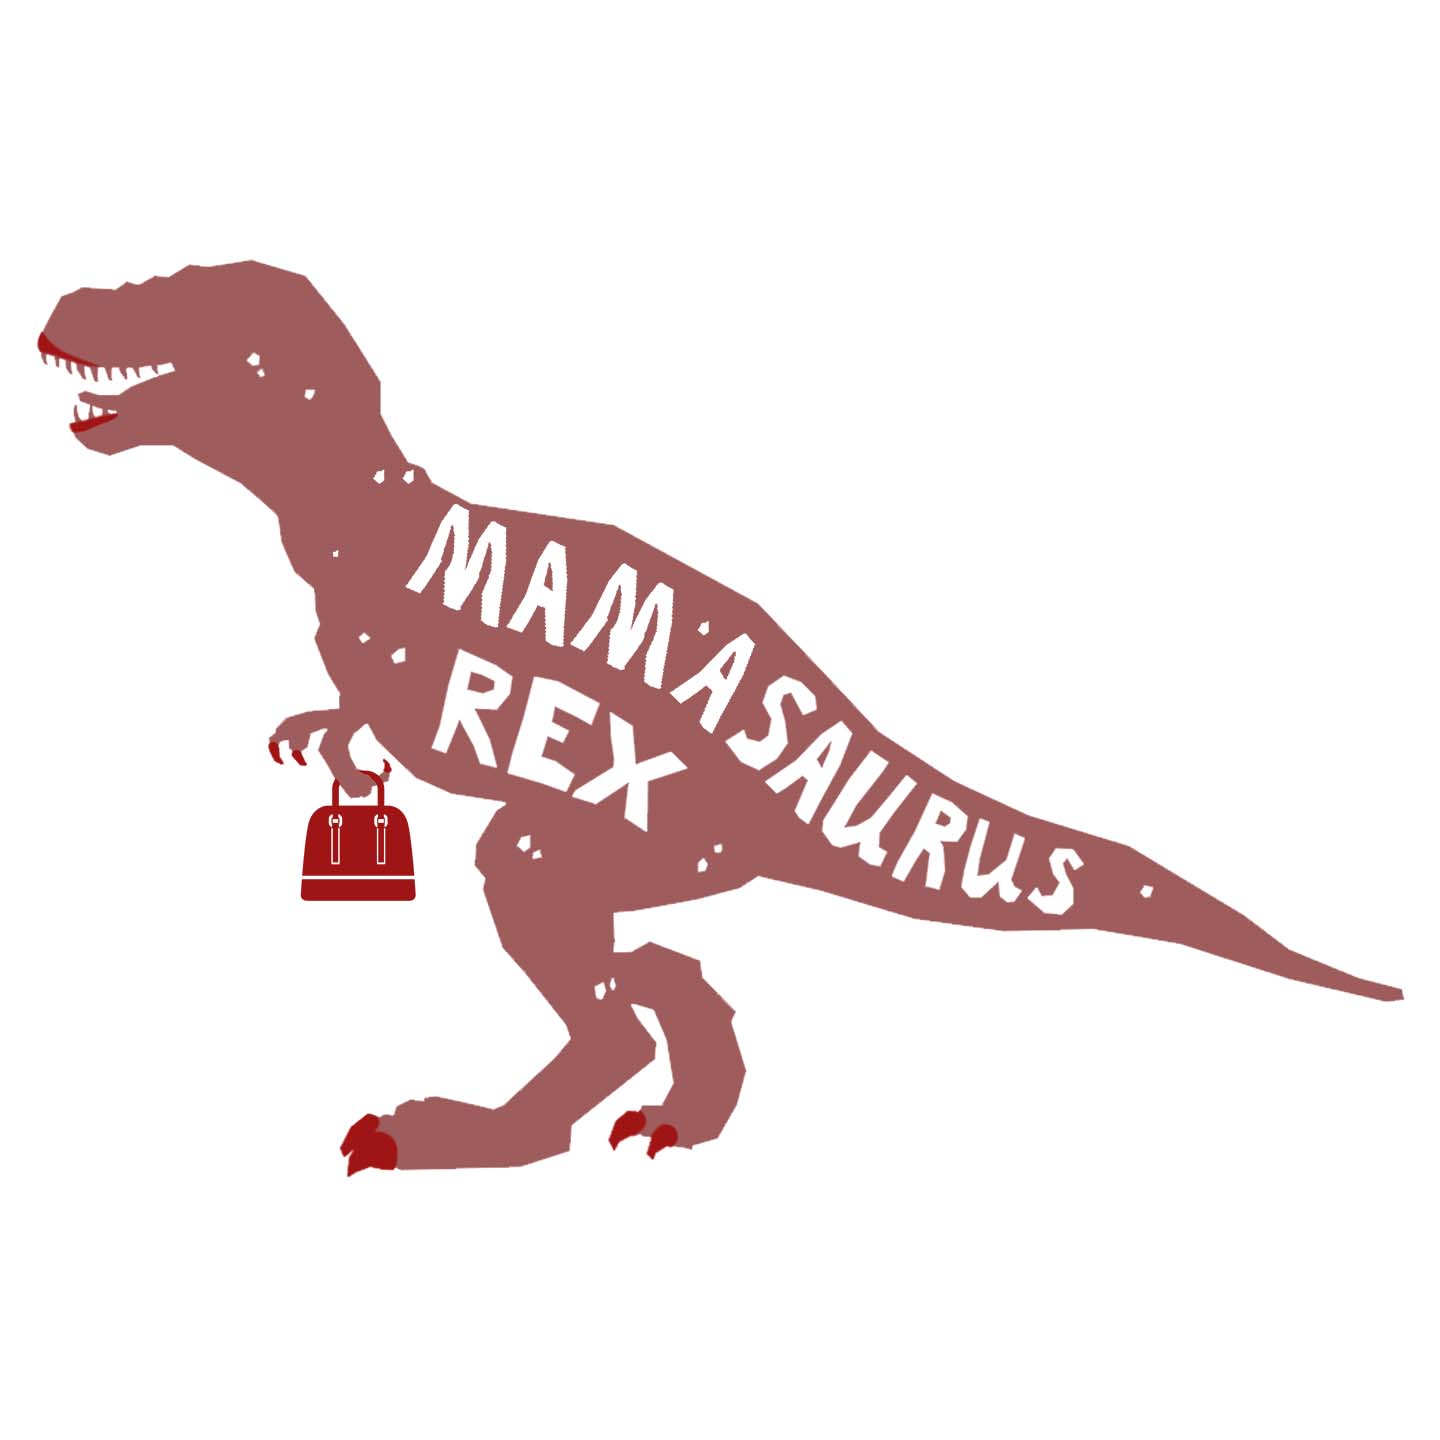 Mamasaurus Rex Silhouette - Women's V-Neck Long Sleeve T-Shirt